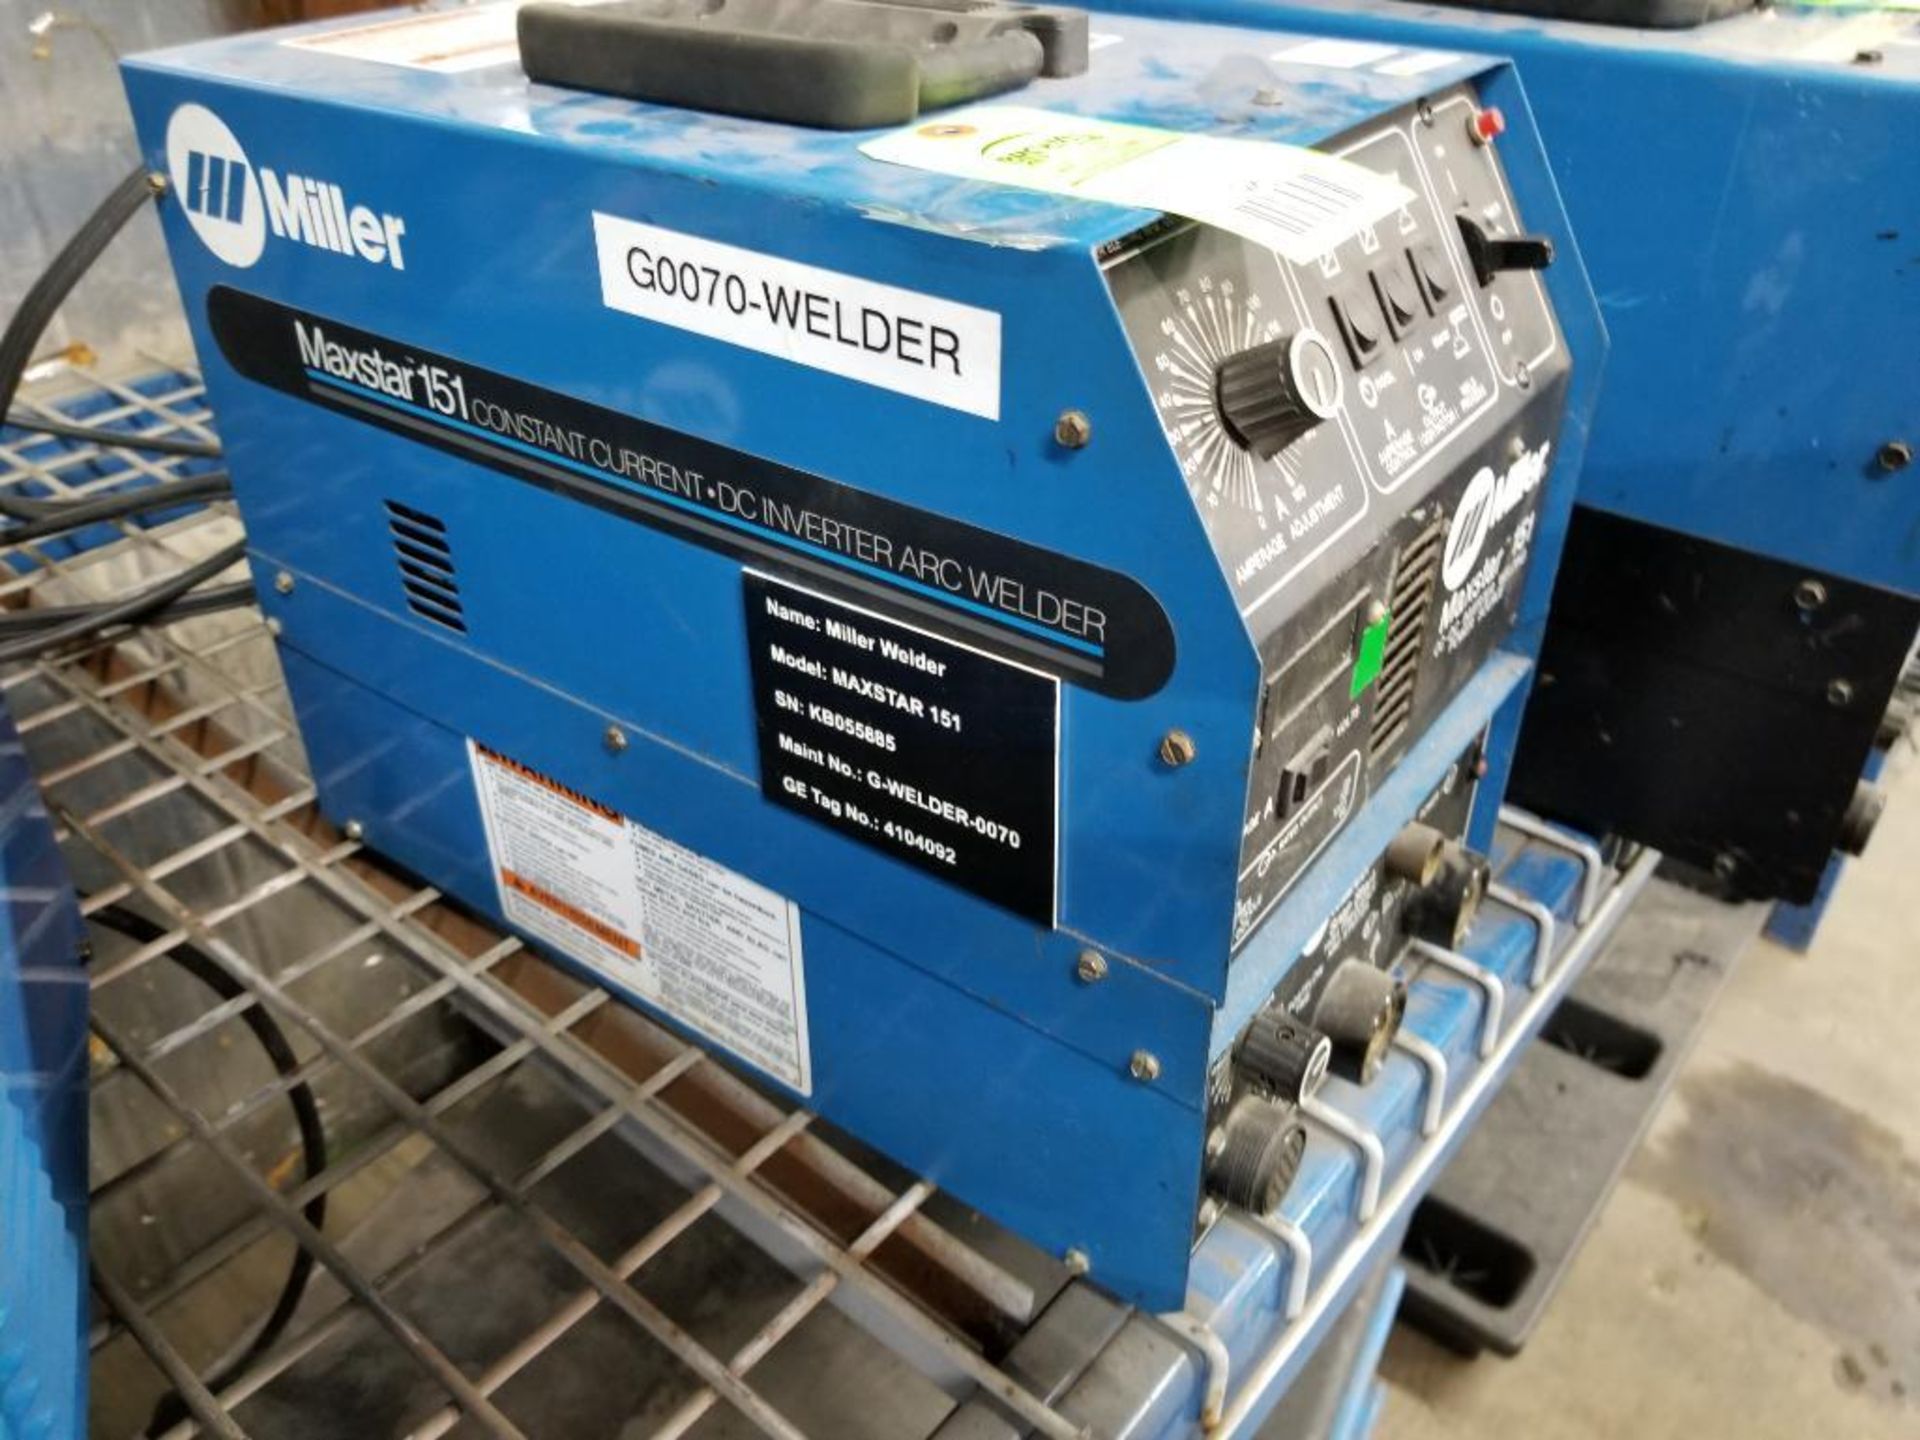 Miller Maxstar 151 CC/DC inverter welding power source. 115v single phase. Snapstart.